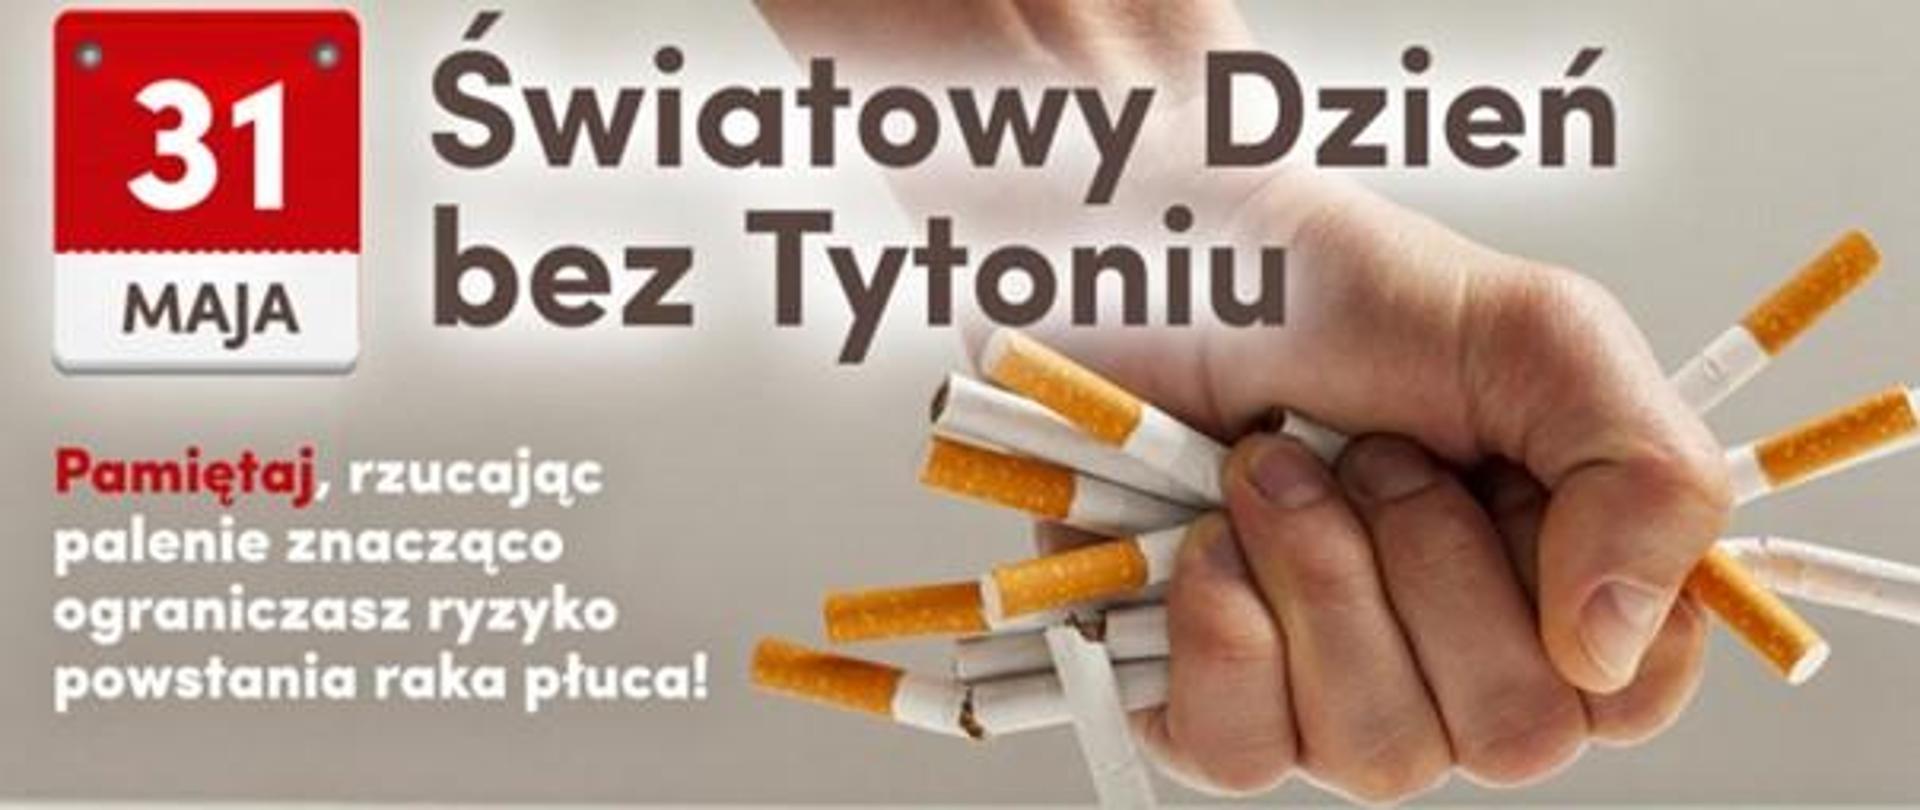 napis Światowy dzień bez tytoniu